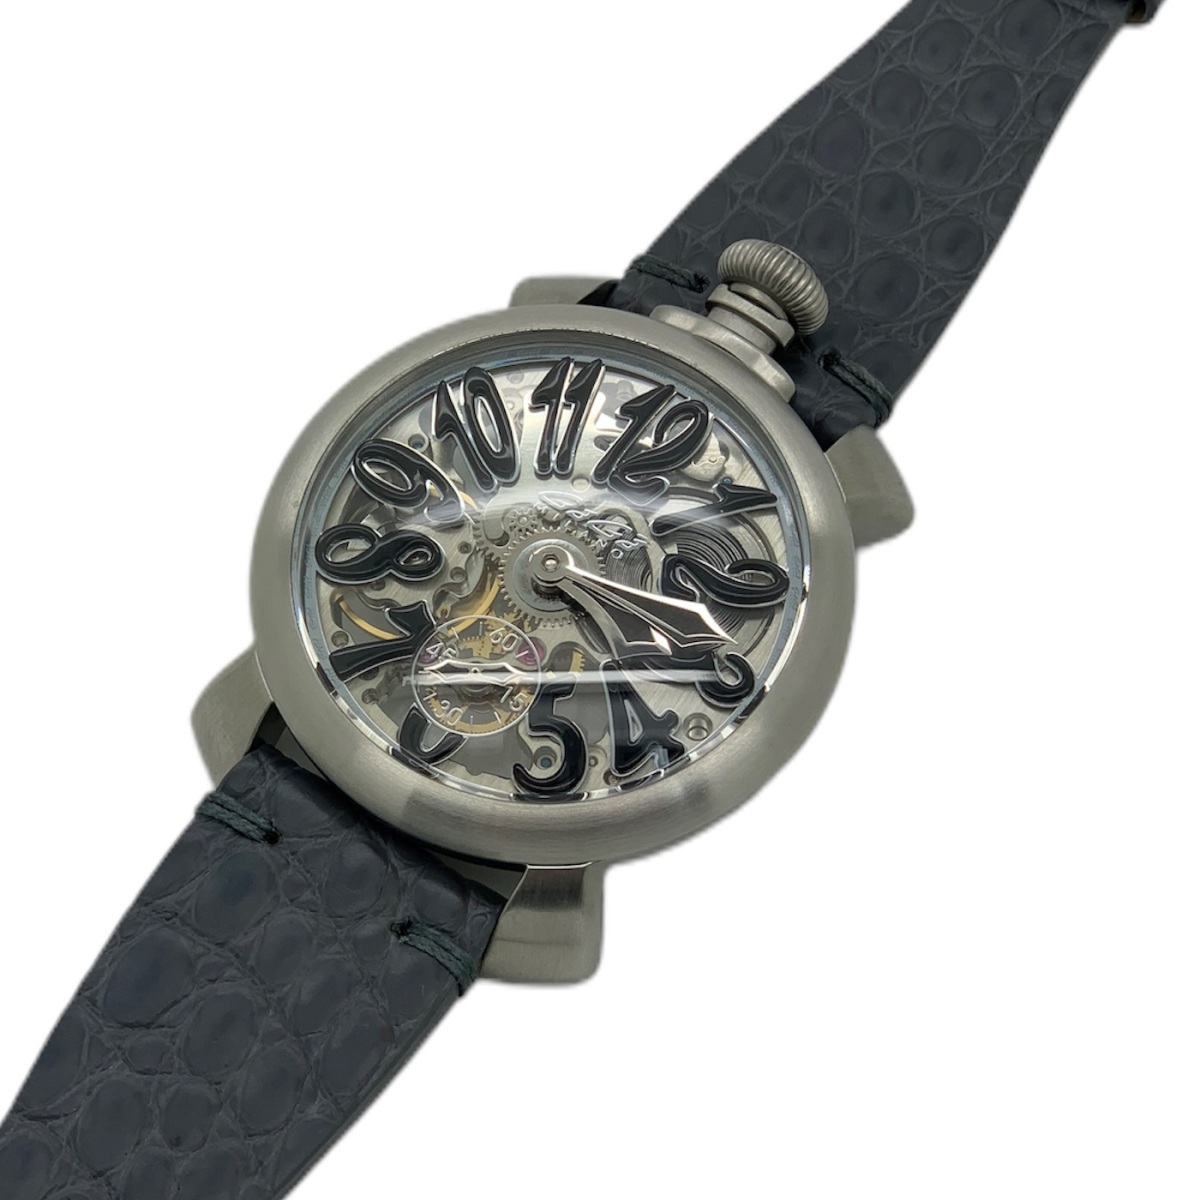 【在庫有】 ２年保証 新品 送料無料 腕時計 GAGA MILANO ガガミラノ 5310.02 MANUALE 48MM スケルトン レザーベルト 手巻き マニュアーレ